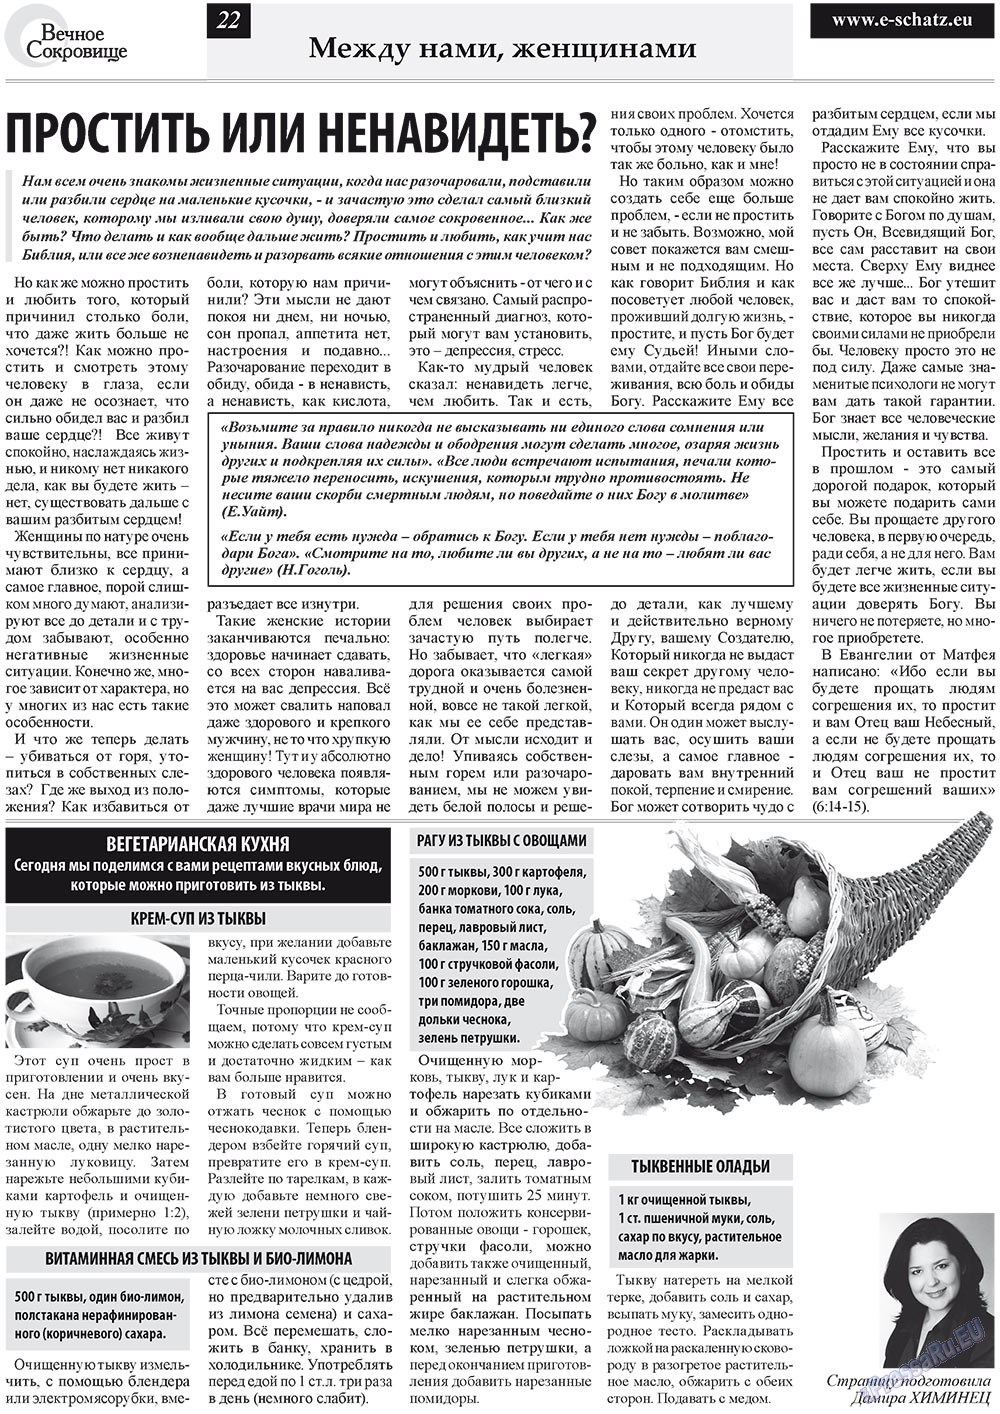 Вечное сокровище (газета). 2010 год, номер 4, стр. 22